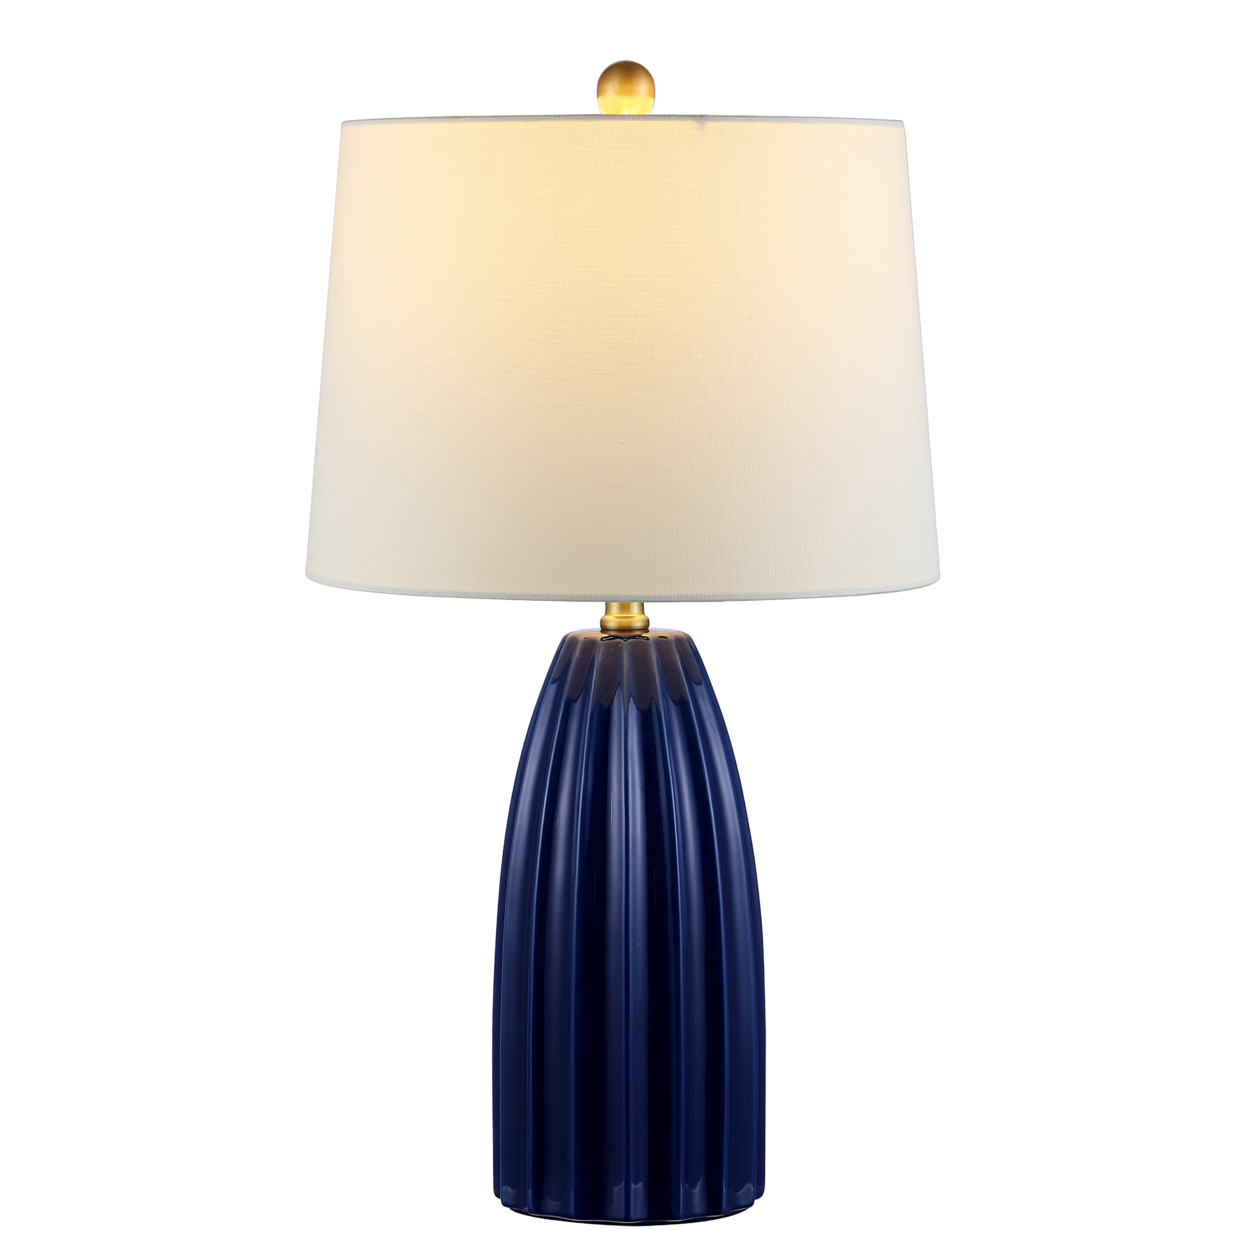 SAFAVIEH Kayden 25.5 Table Lamp , Navy Blue ,